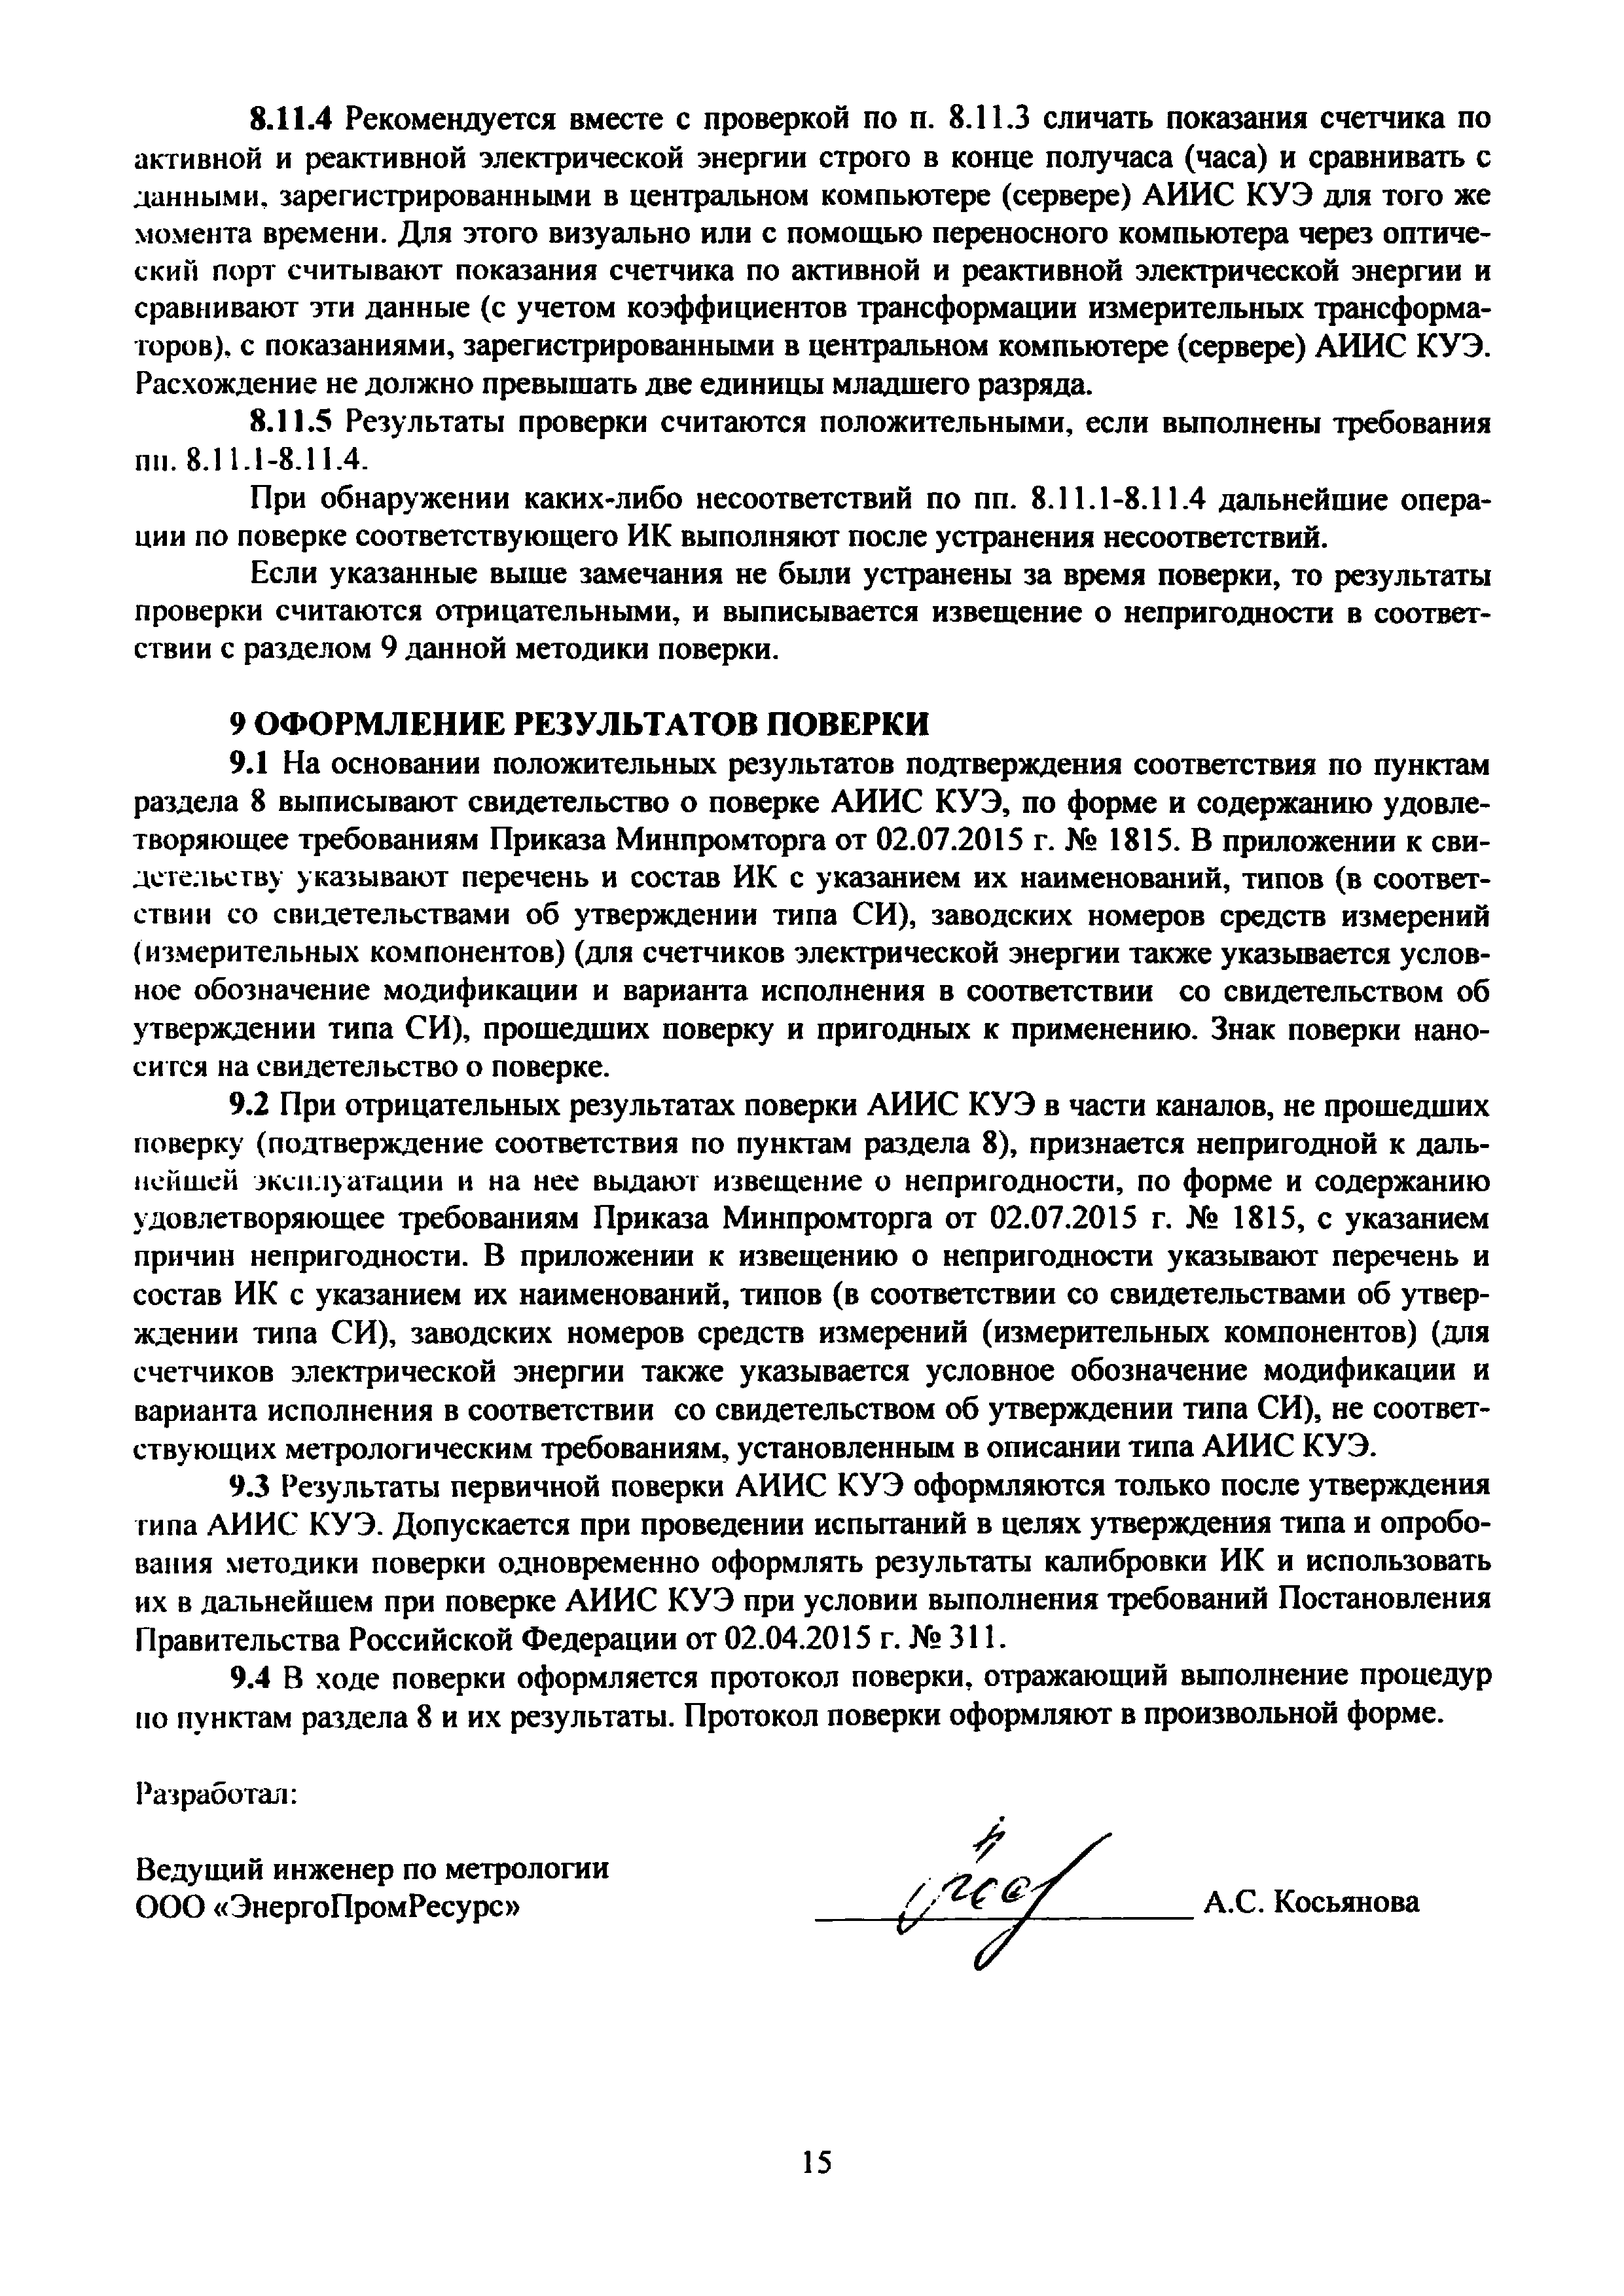 МП ЭПР-205-2019